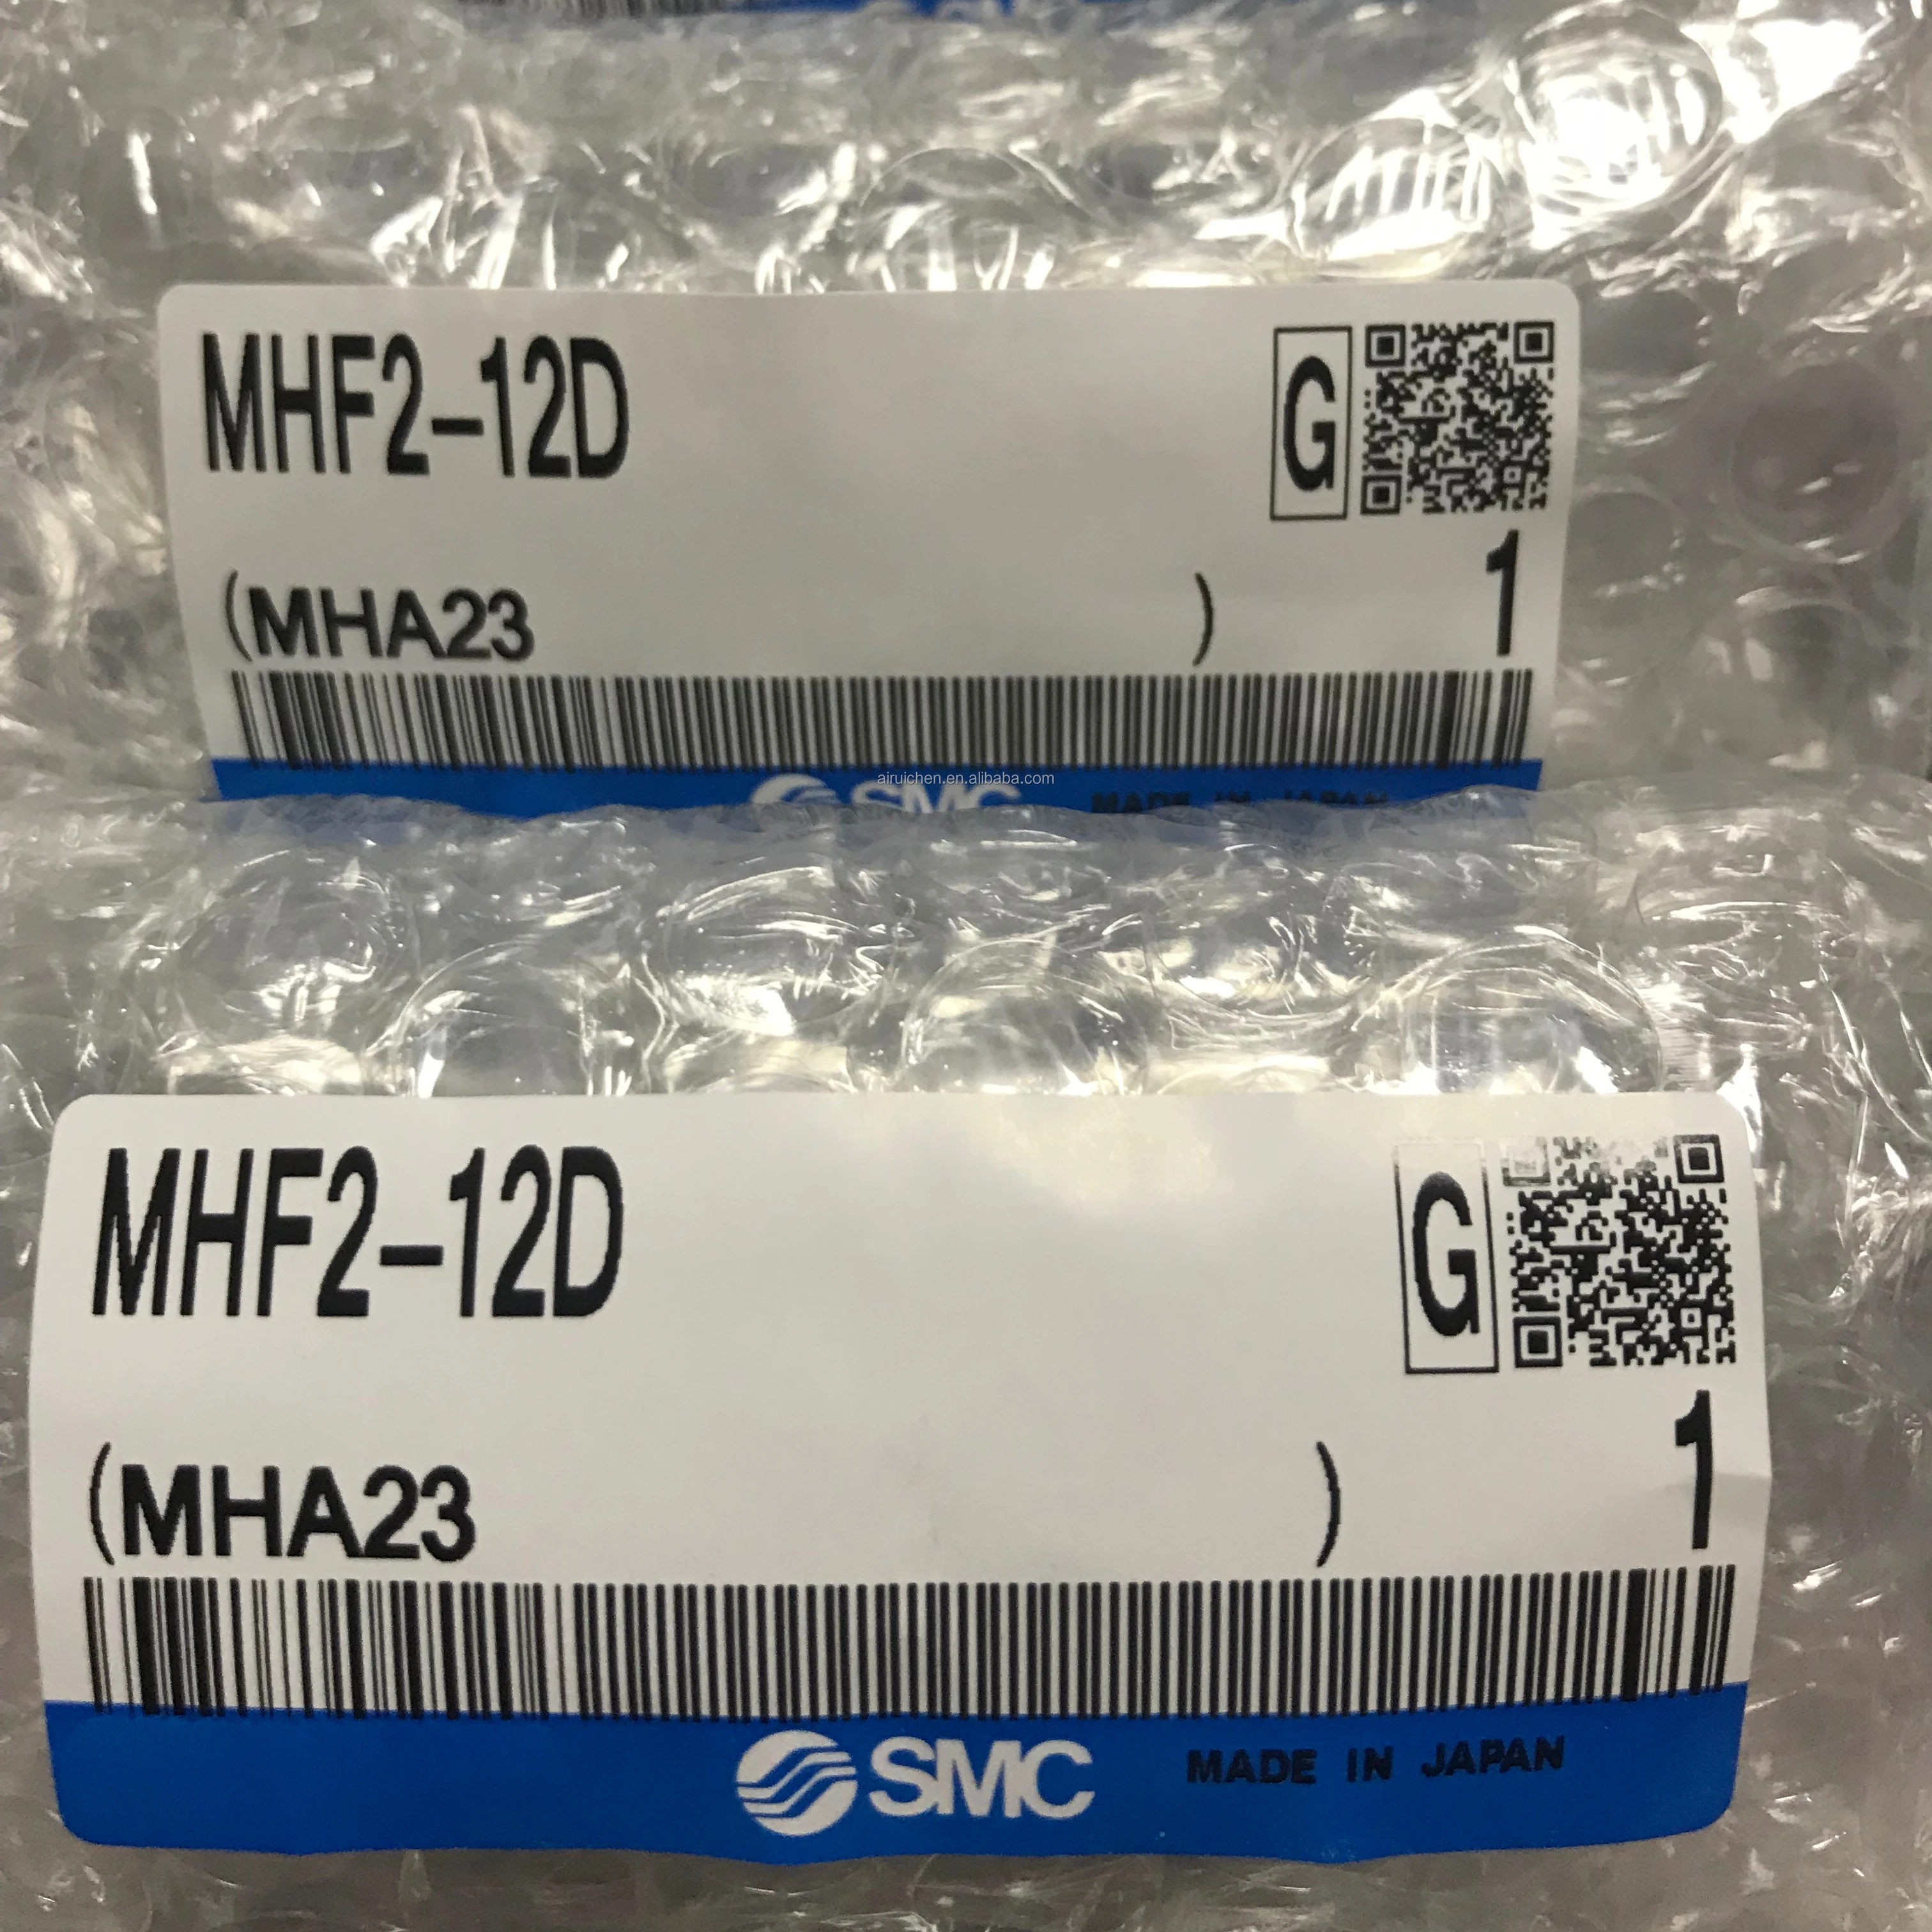 

Brand New SMC Pneumatics MHF2 Air Gripper, MHF2-12D Cylinder